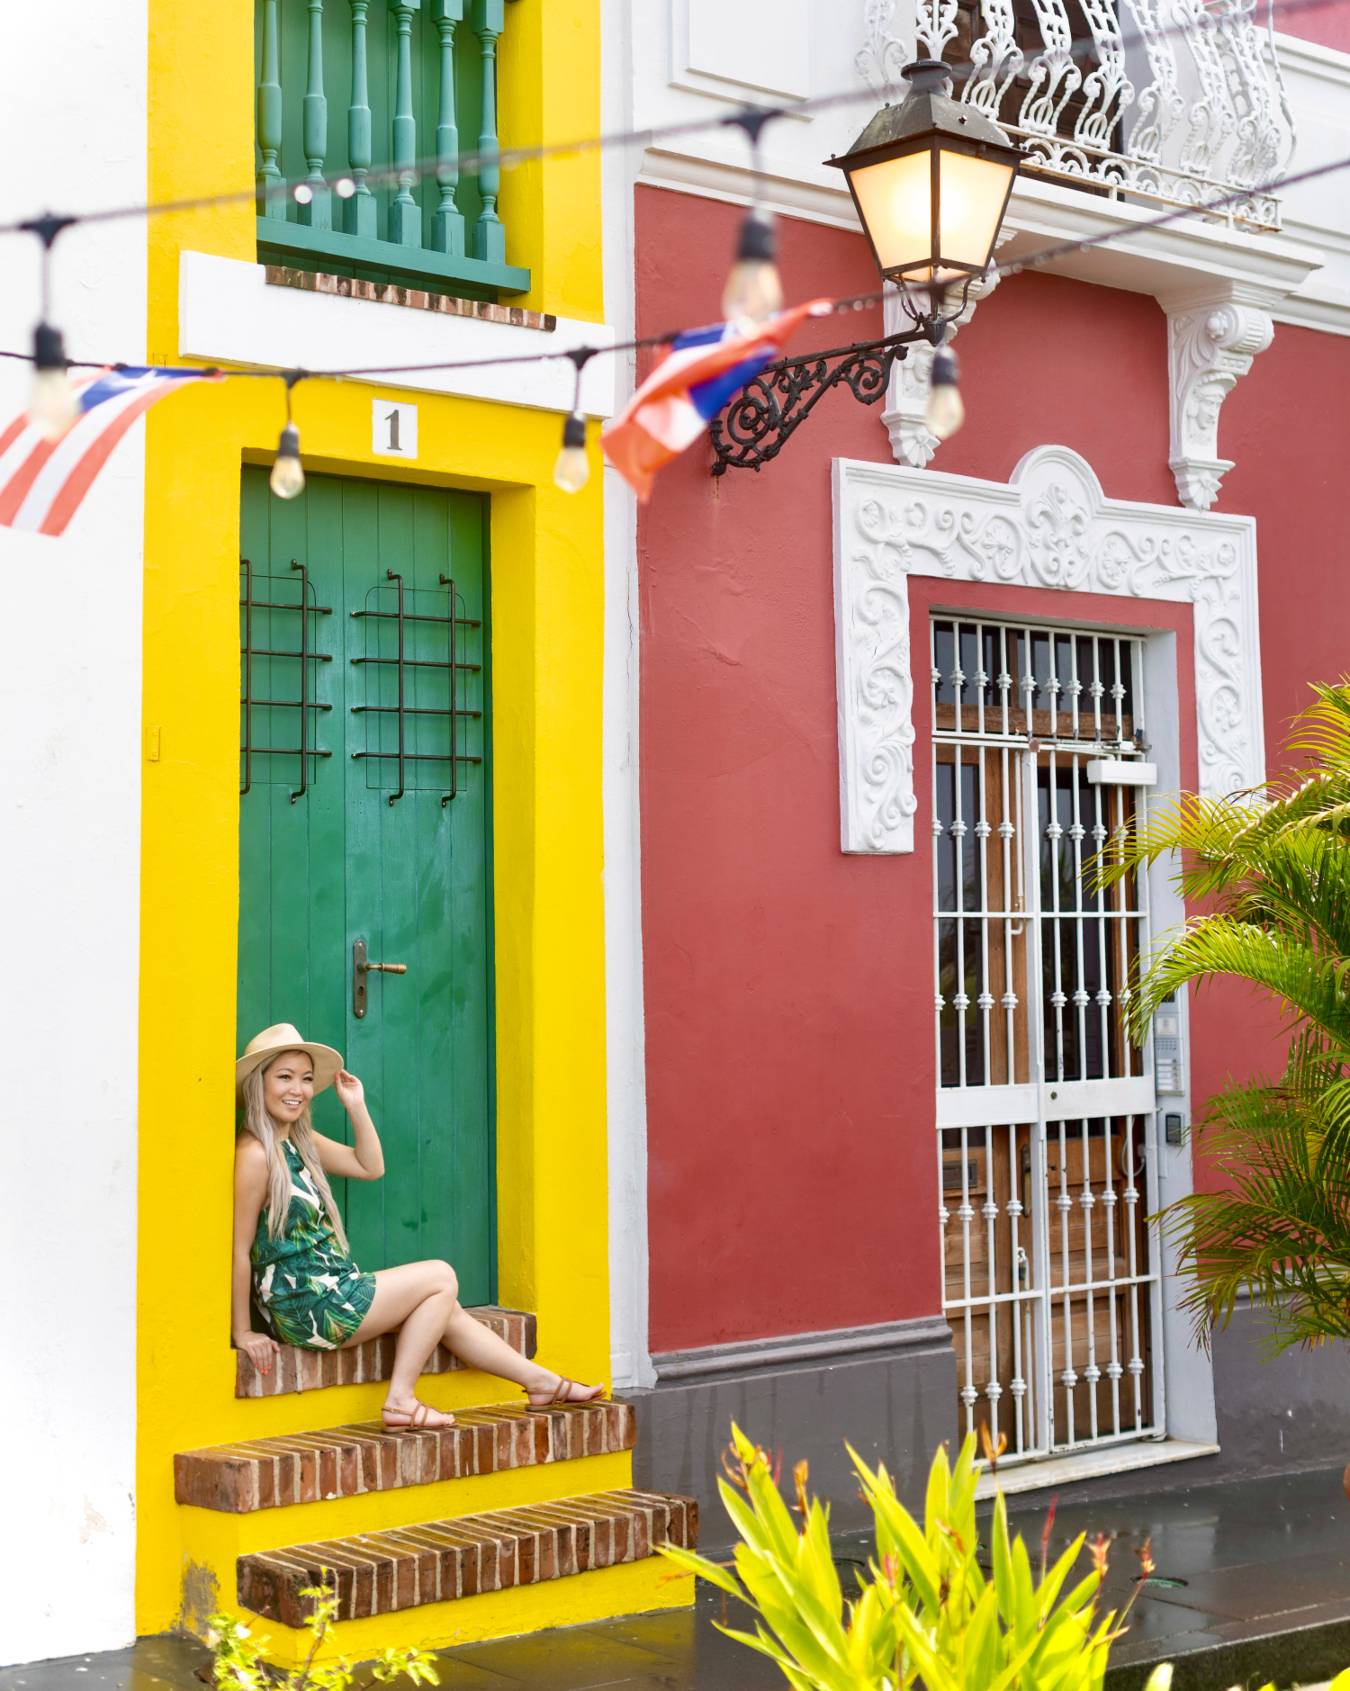 Paseo De La Princesa In Old San Juan, Puerto Rico - All You Need